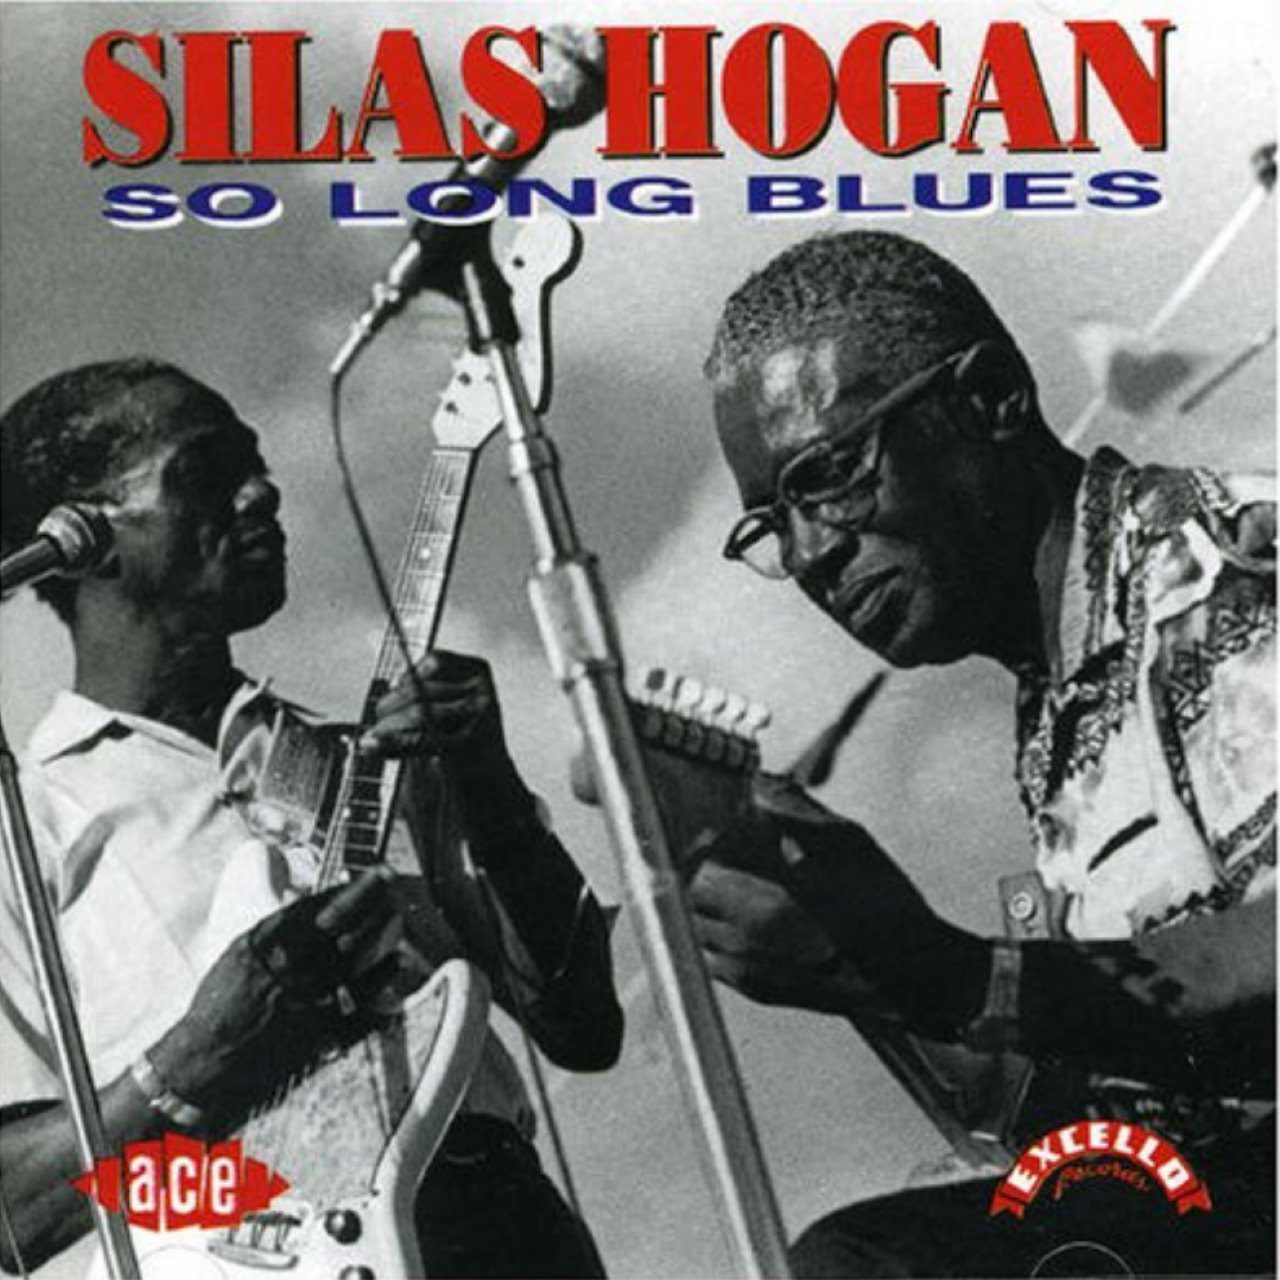 Silas Hogan – So Long Blues cover album